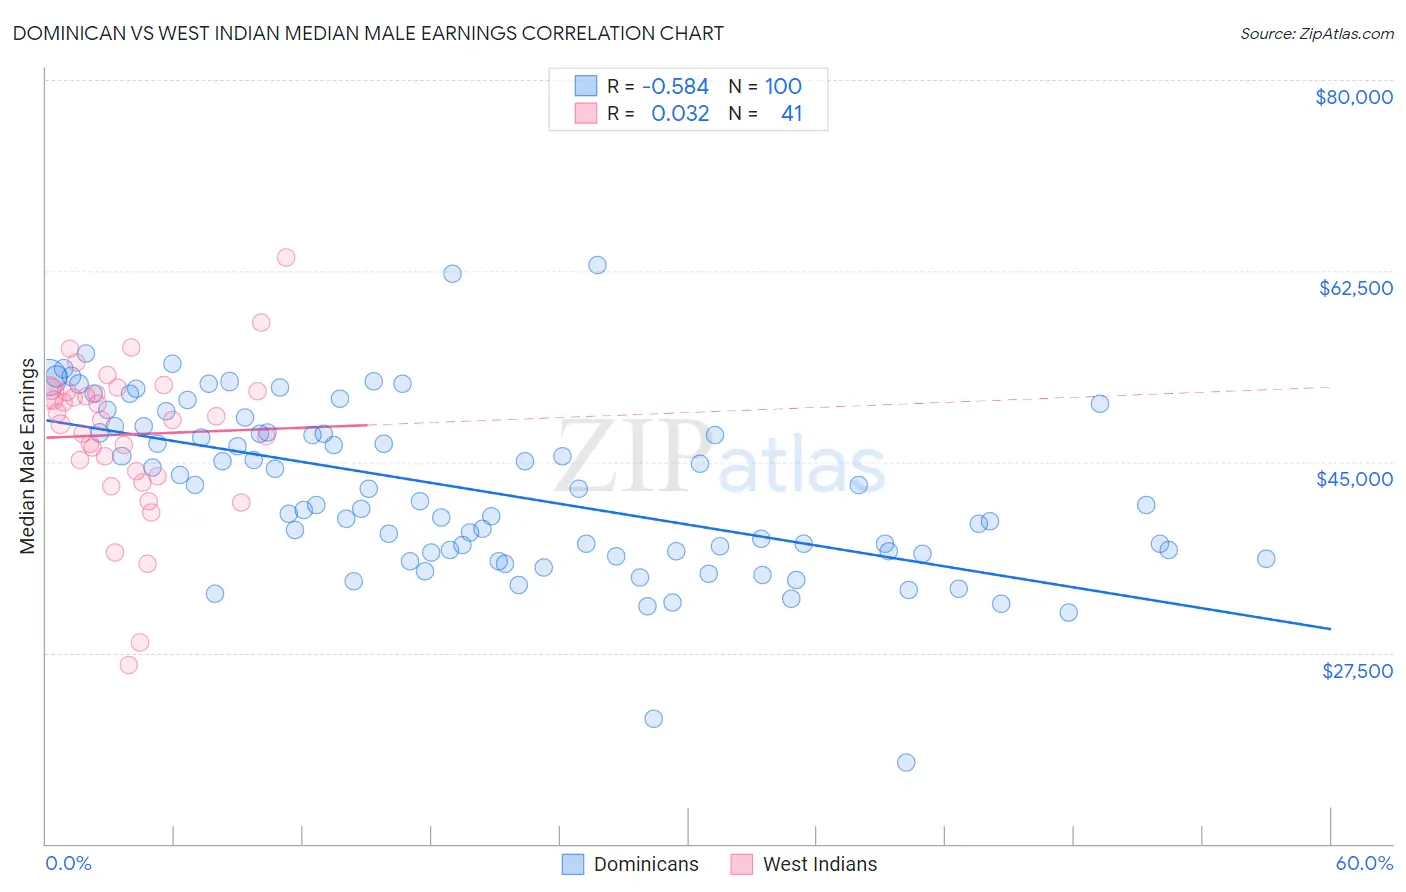 Dominican vs West Indian Median Male Earnings